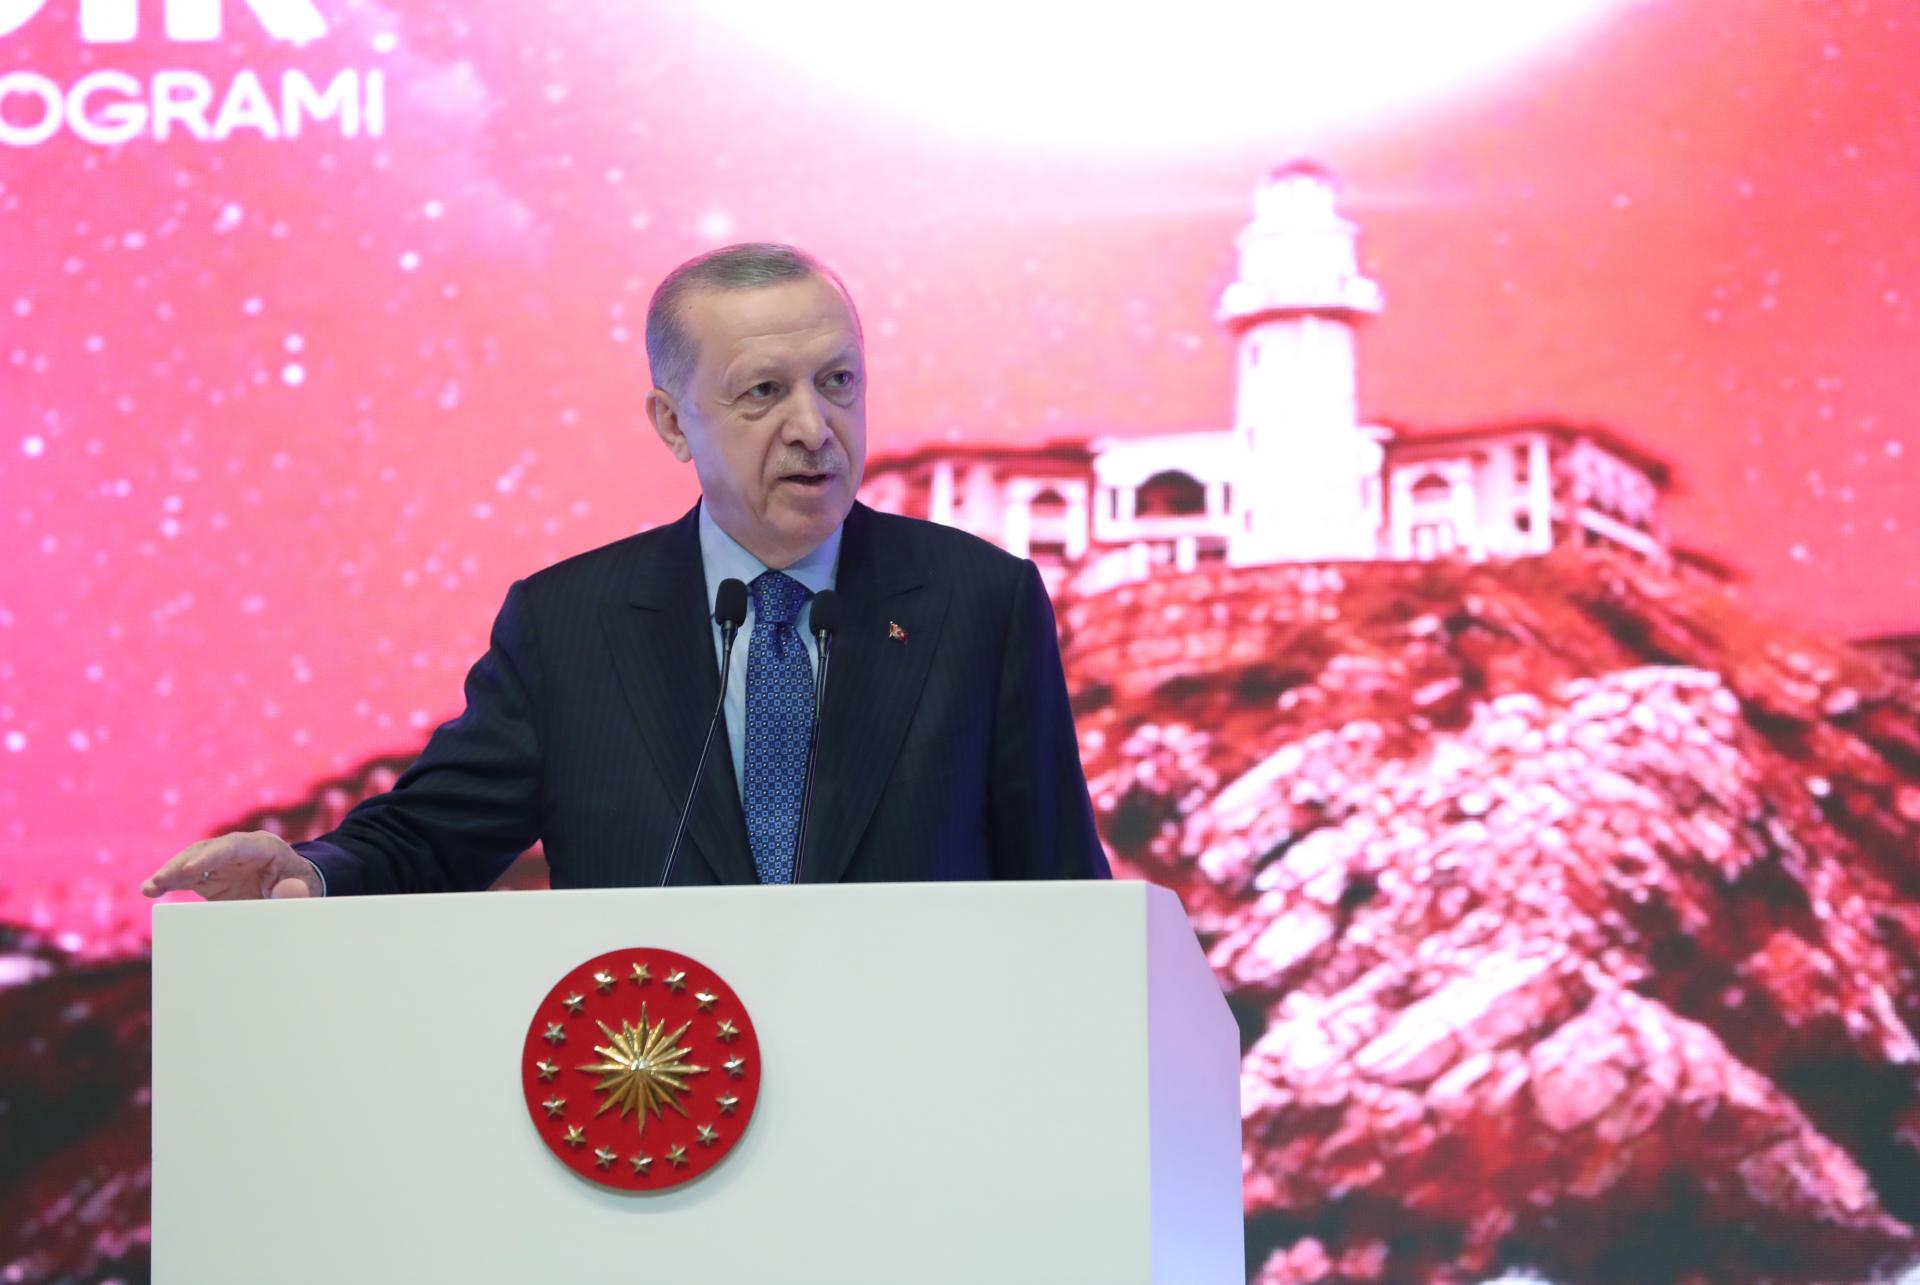 Ερντογάν: Έμειναν στο παρελθόν οι καιροί που η πολιτική στην Τουρκία κατευθύνονταν με τρομοκρατία